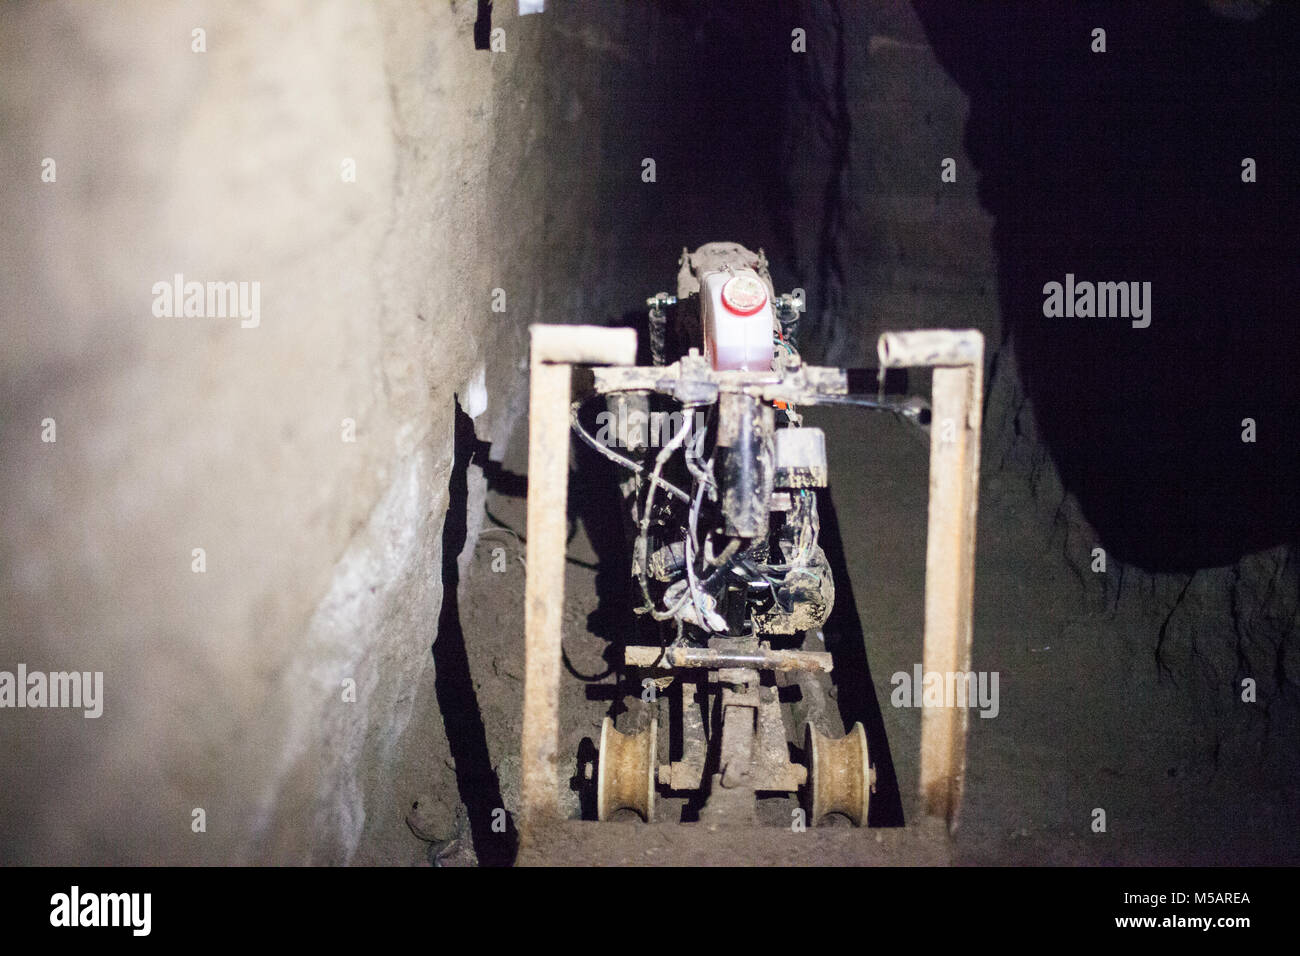 La ferme 'tunnel Joaquin El Chapo Guzman' utilisées pour échapper à la prison de l'Altiplano près de Toluca, Mexique le mercredi 15 juillet 2015. C'est la deuxième fois qu'il a échappé à une prison mexicaine. Banque D'Images